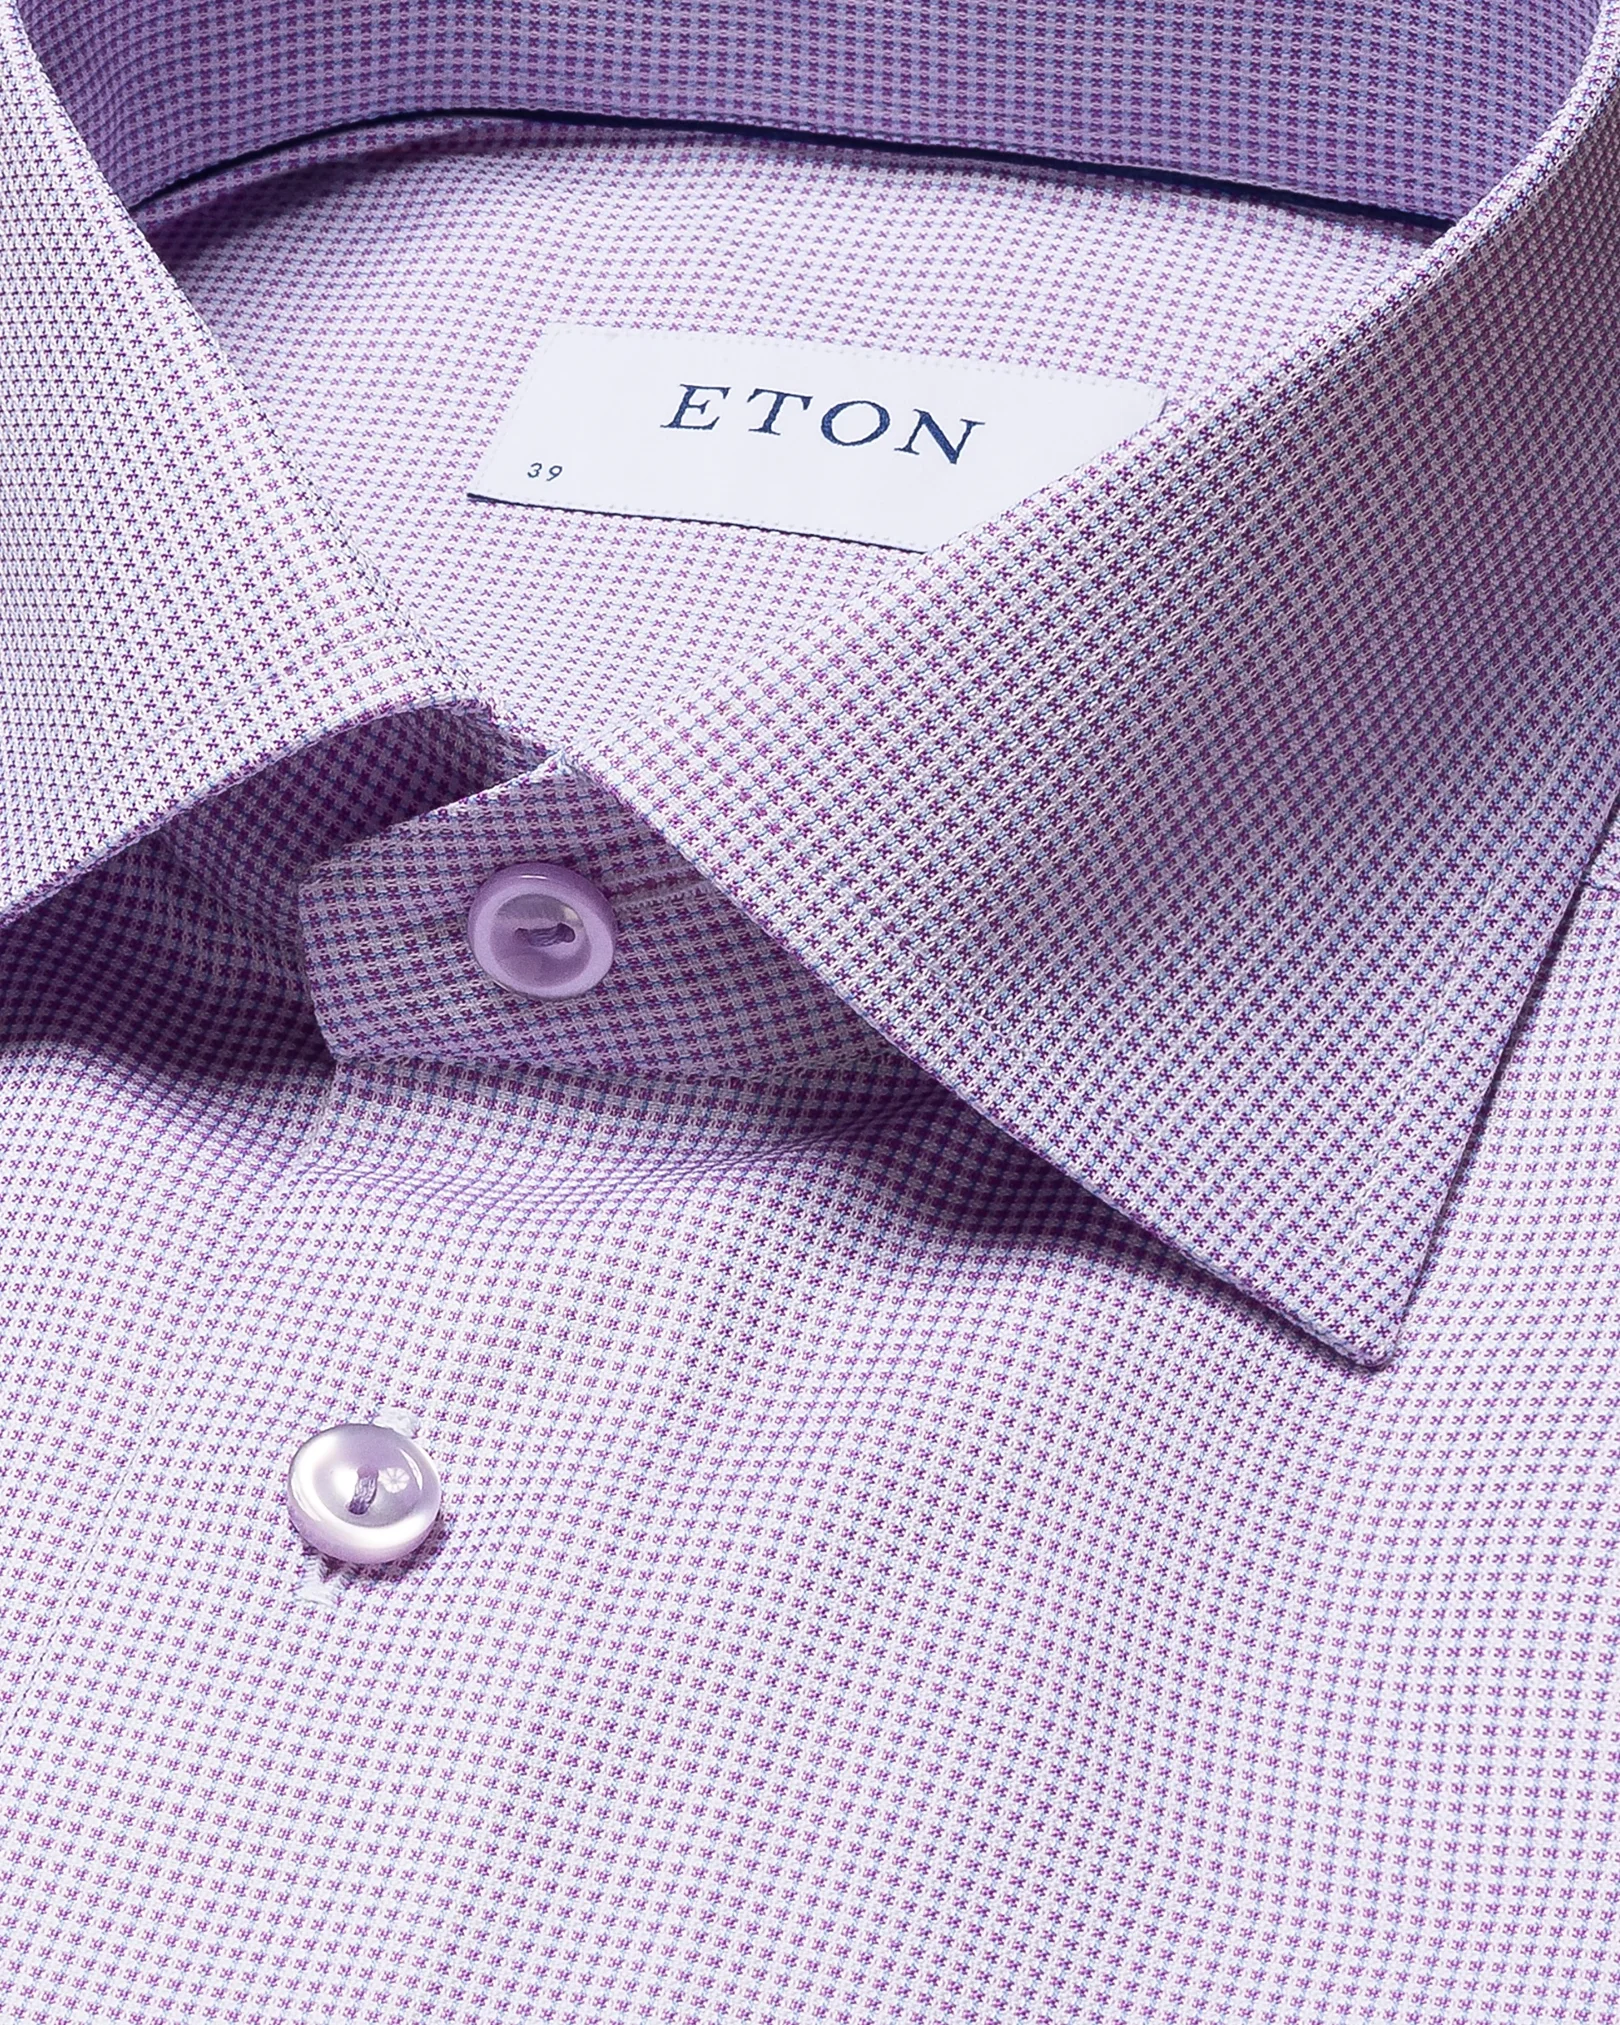 Eton - mid purple signature twill cutaway